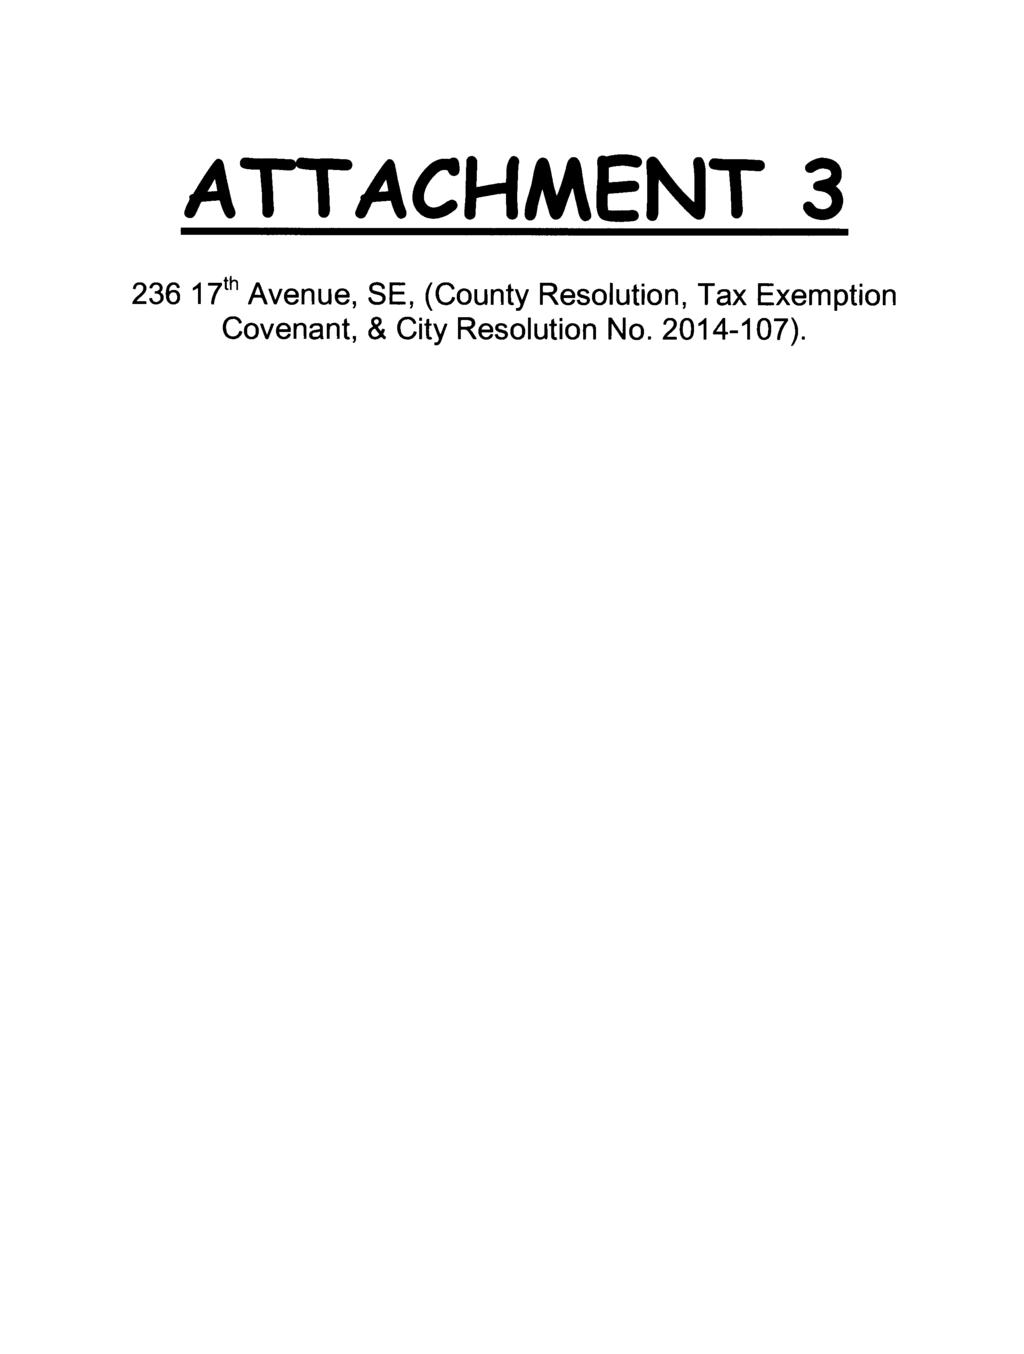 ATTACHMENT 3 236 17th Avenue, SE, (County Resolution,